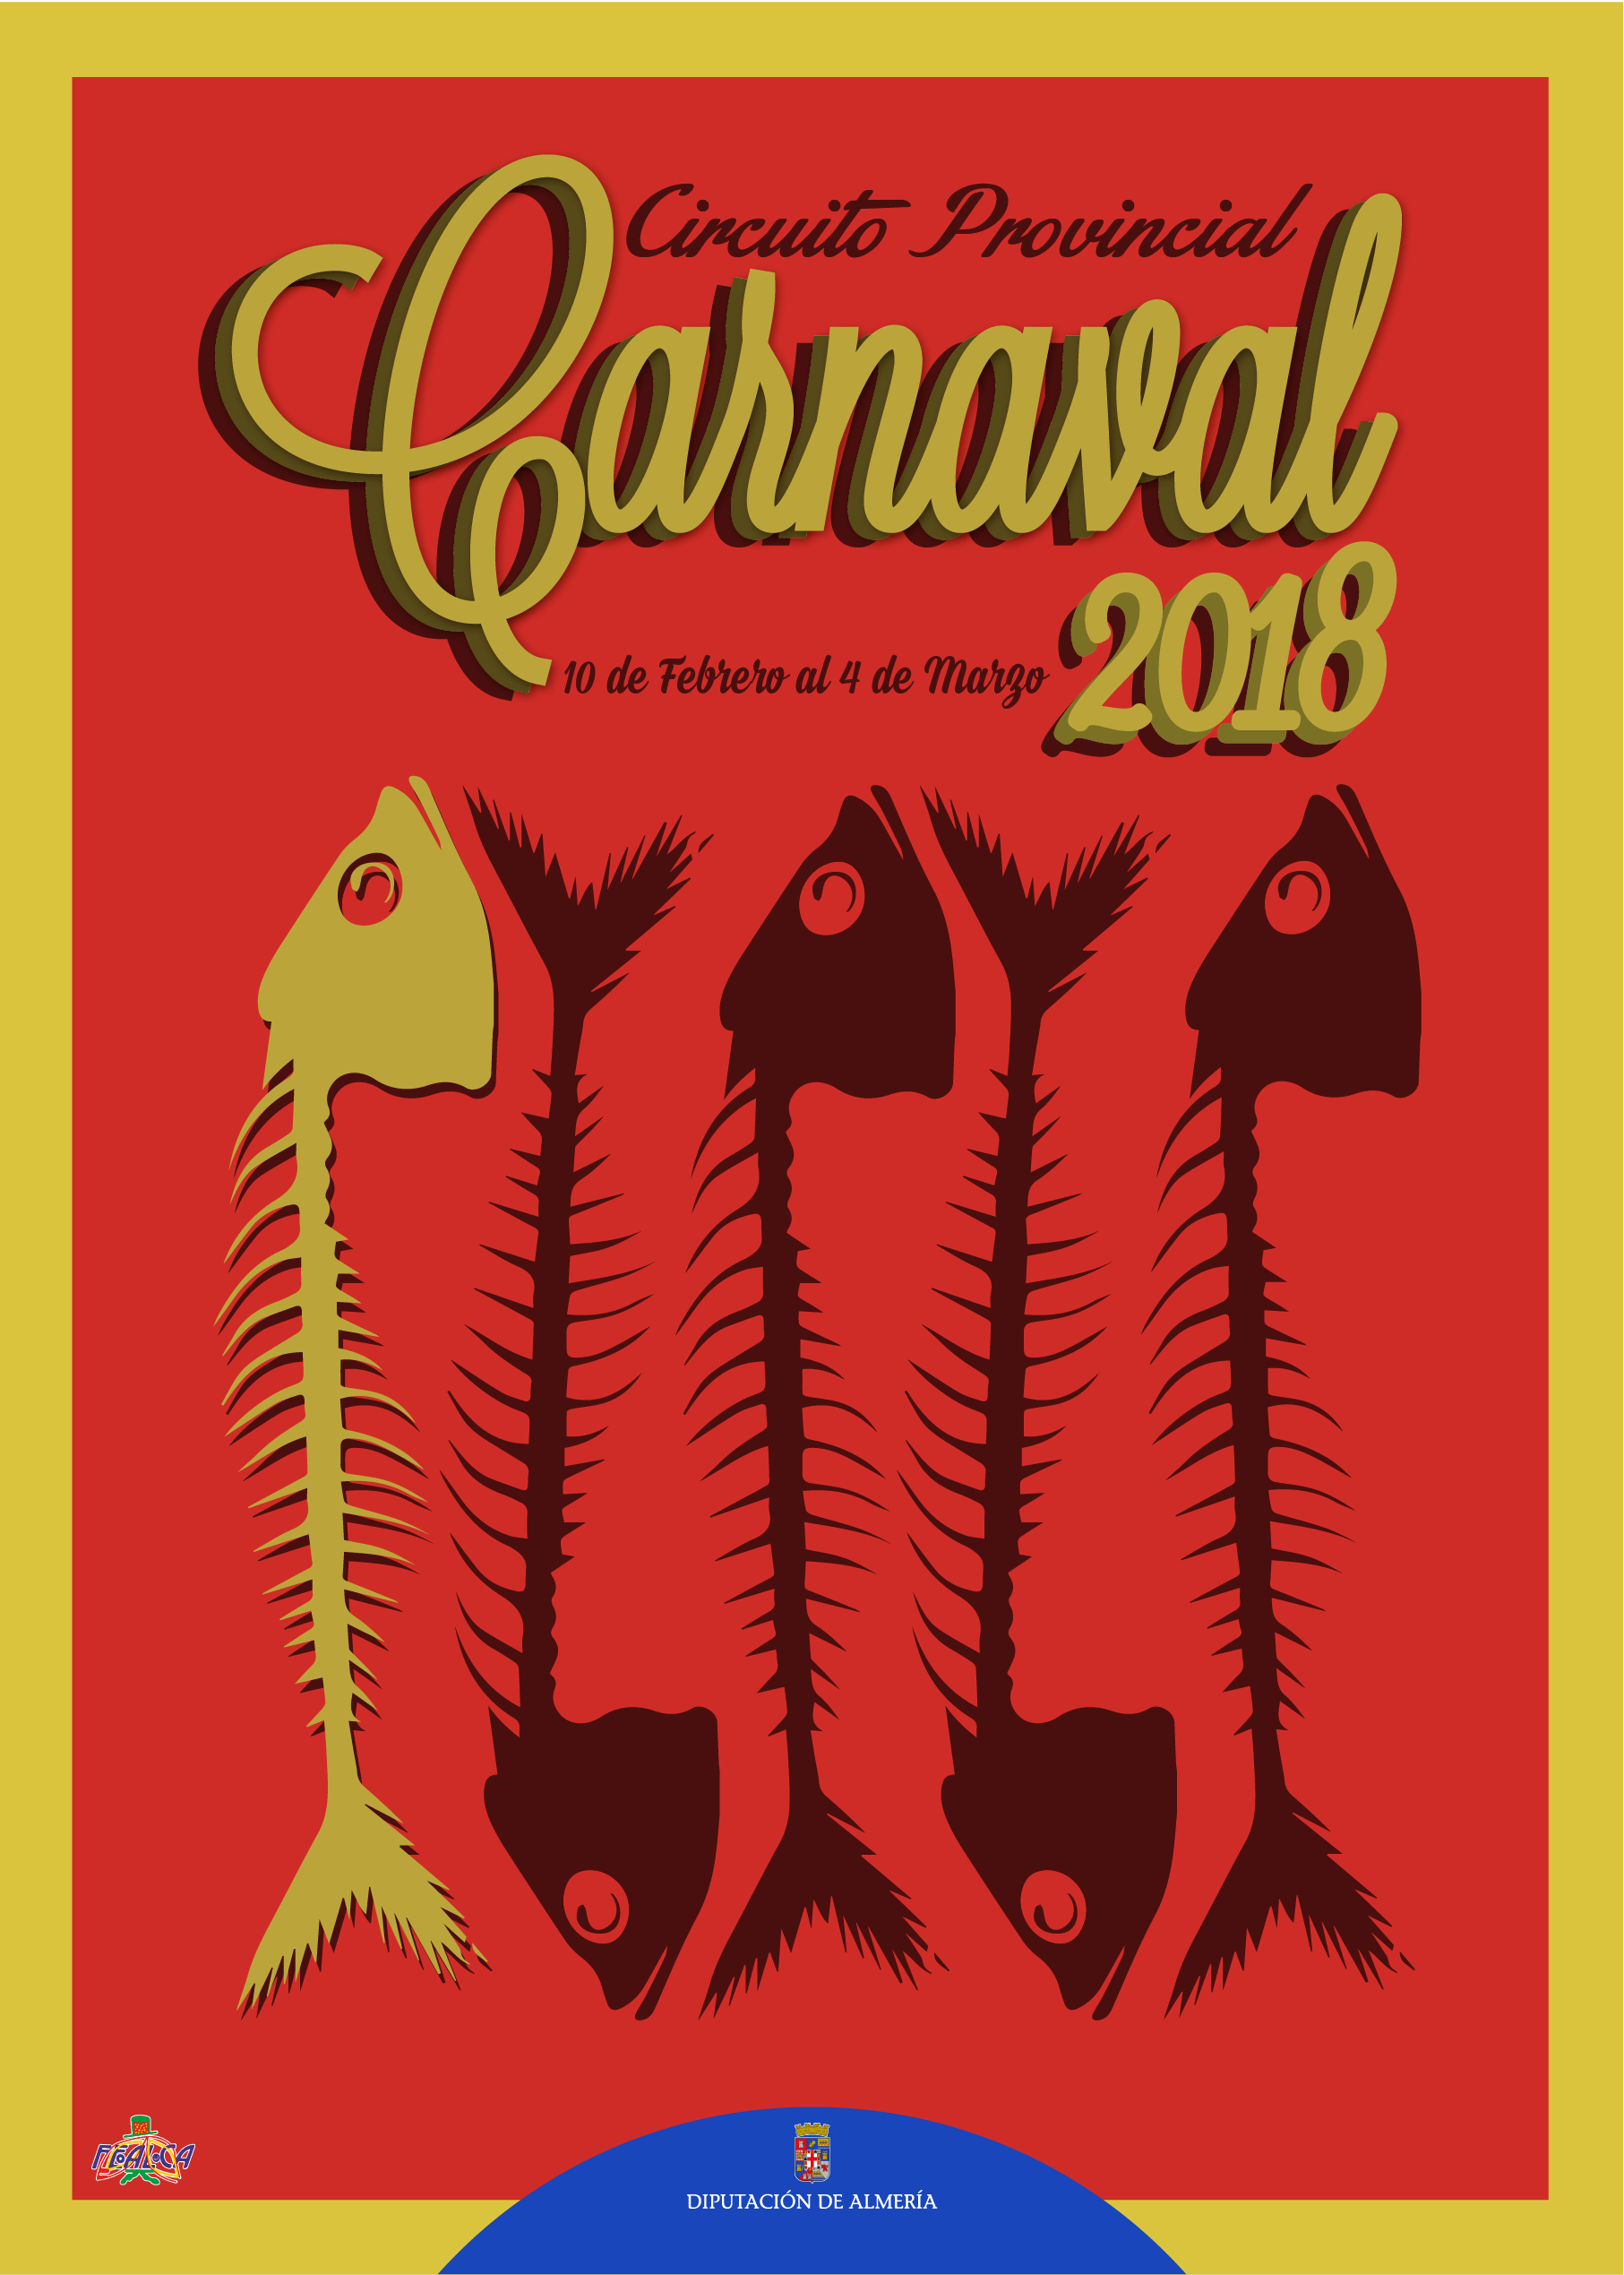 Cartel del Circuito Provincial de Carnaval 2018